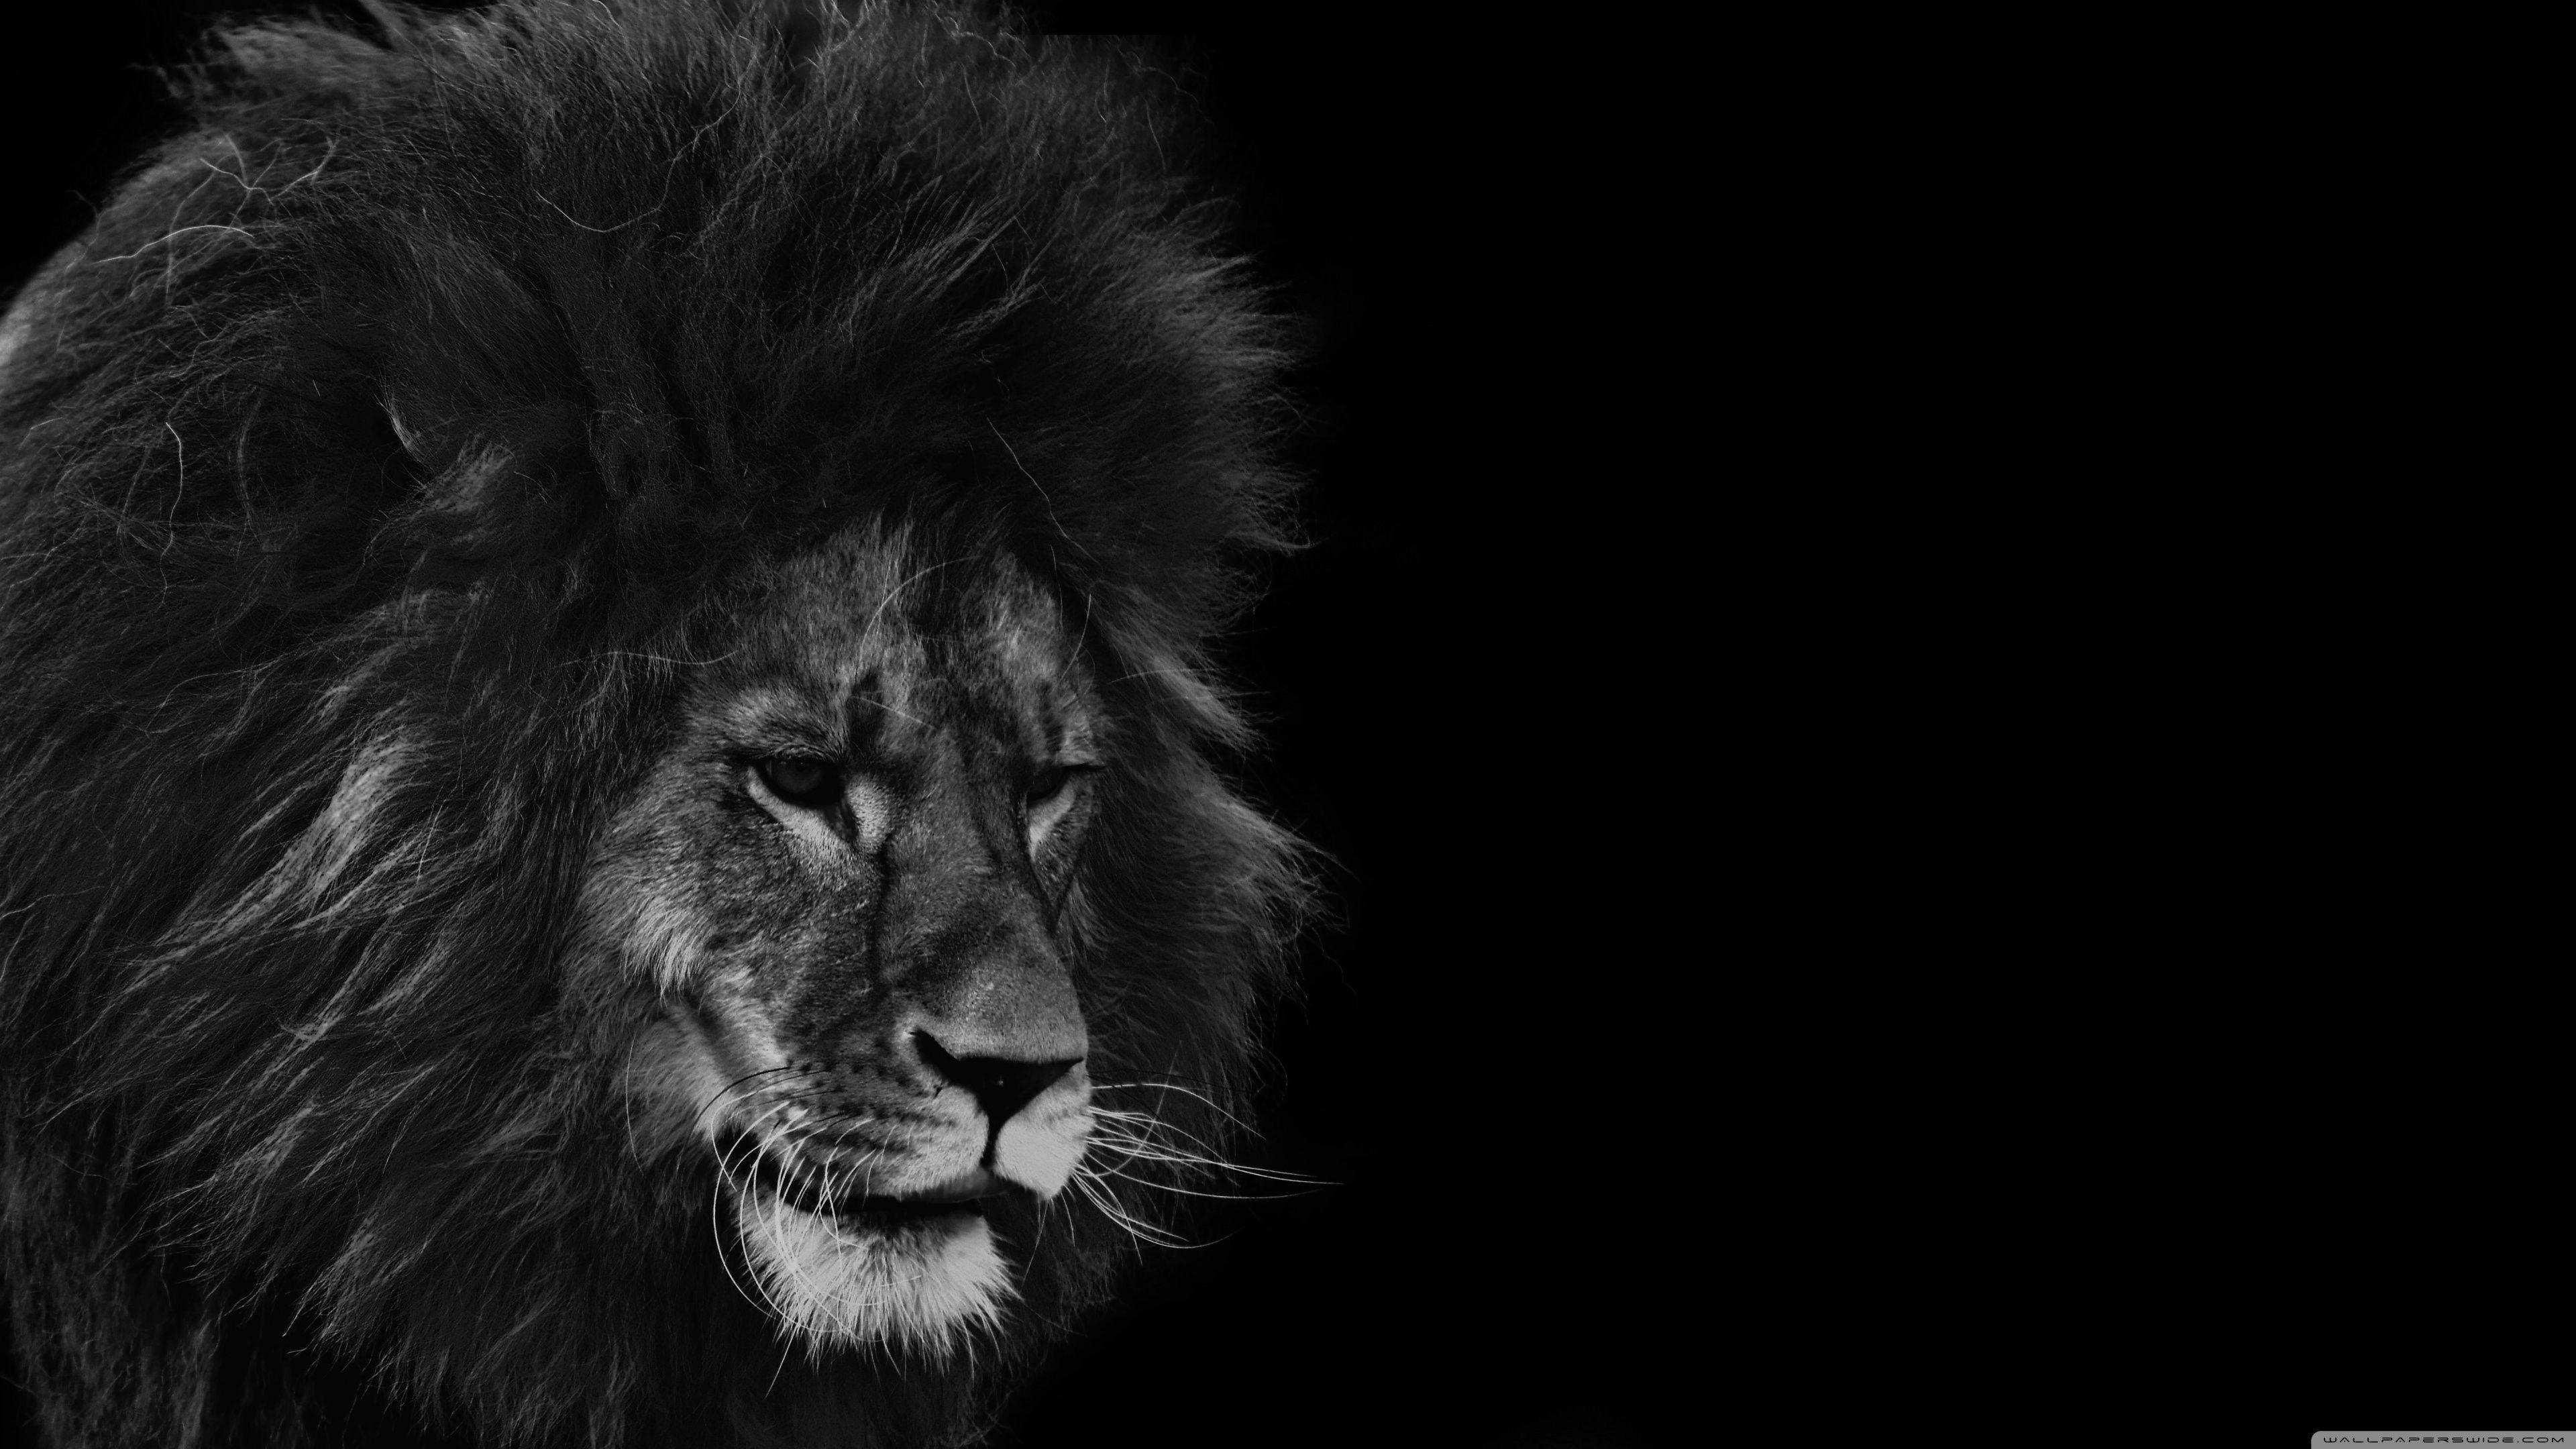 Black Lion 4K Wallpapers - Top Free Black Lion 4K Backgrounds ...